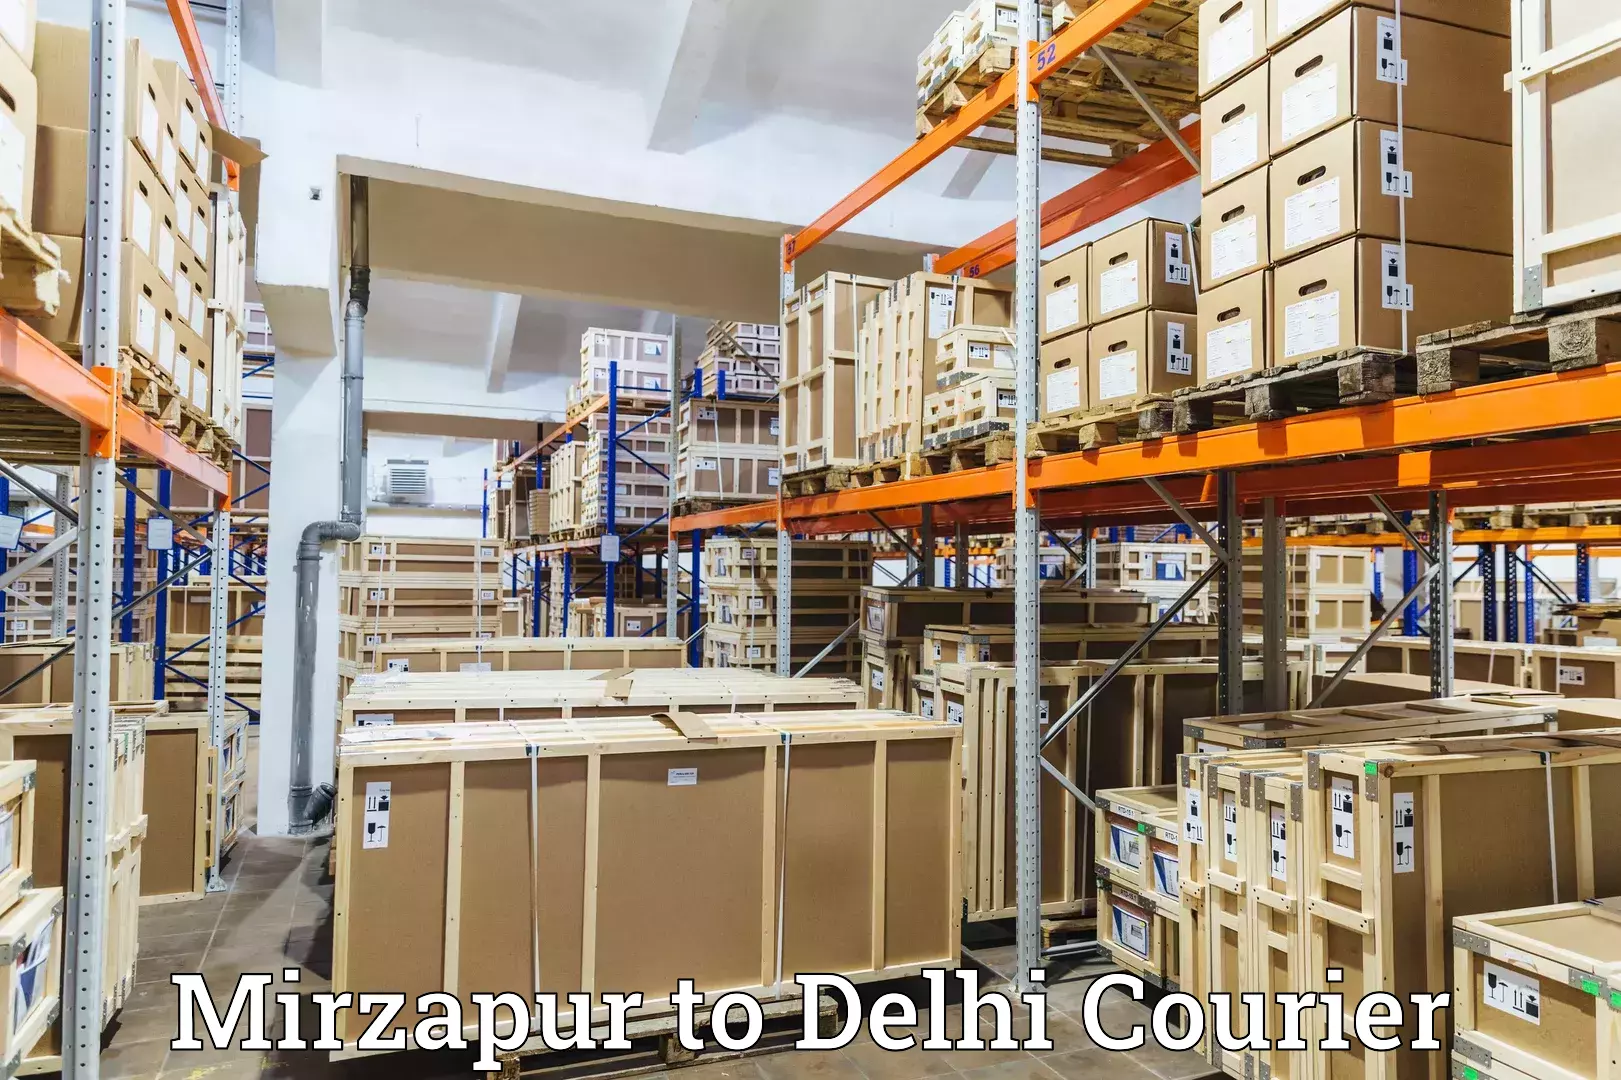 Courier service efficiency Mirzapur to Jamia Millia Islamia New Delhi